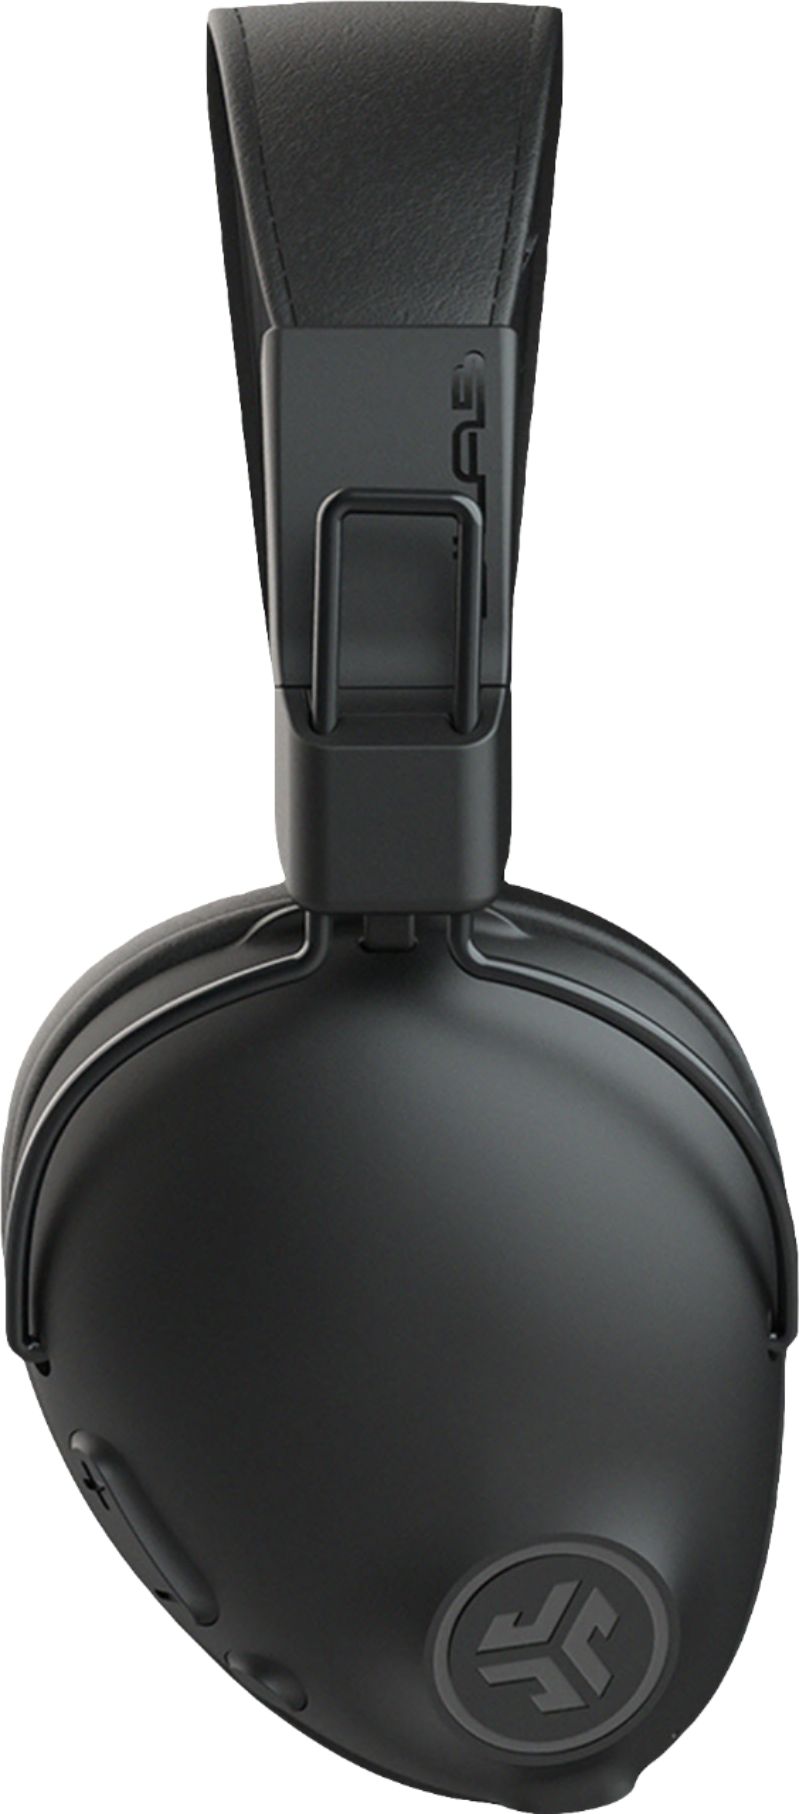 Angle View: 512 Audio - Academy Studio Headphones - Black